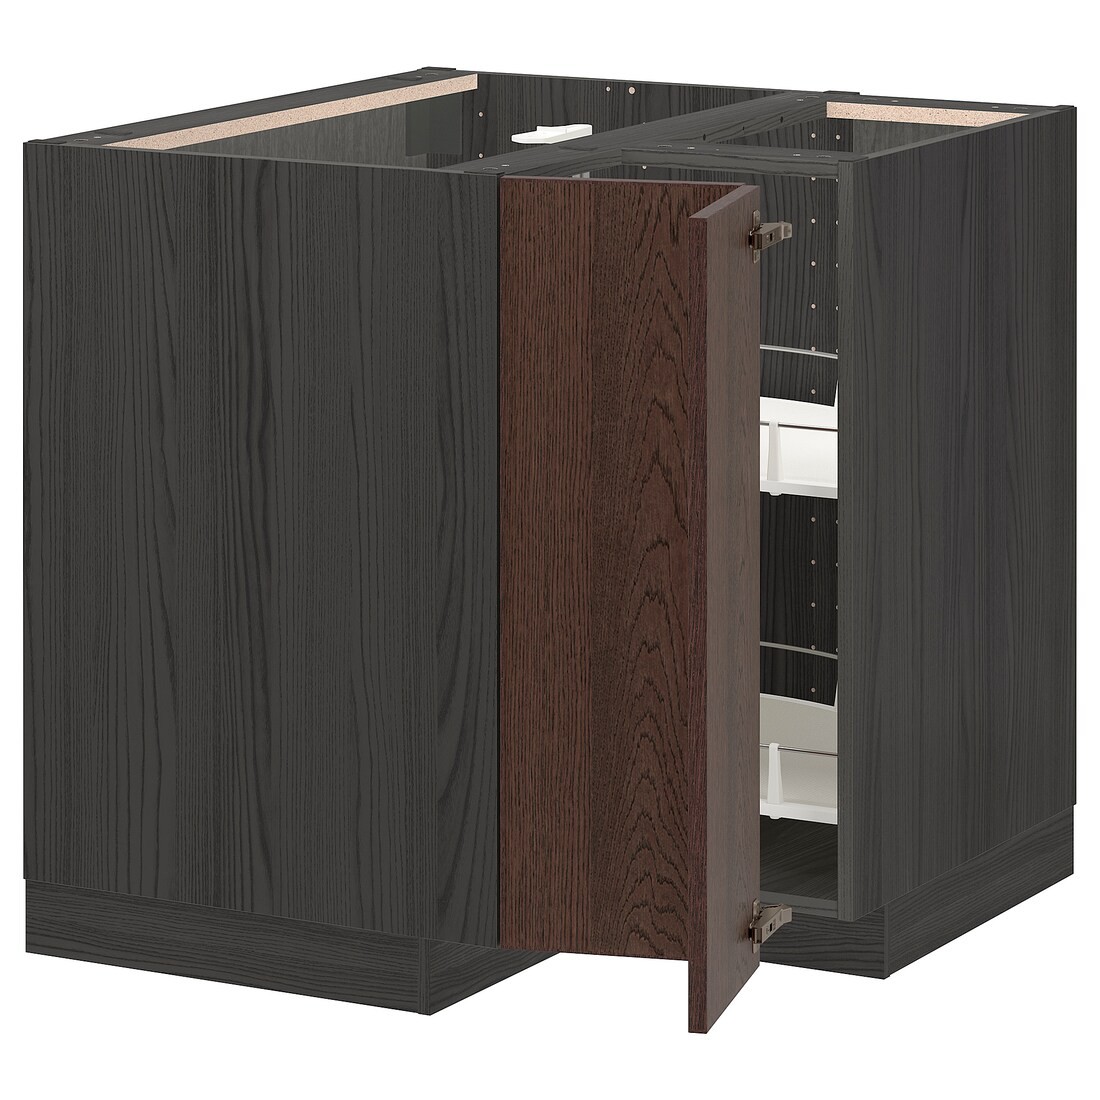 METOD МЕТОД Угловой напольный шкаф с каруселью, черный / Sinarp коричневый, 88x88 см